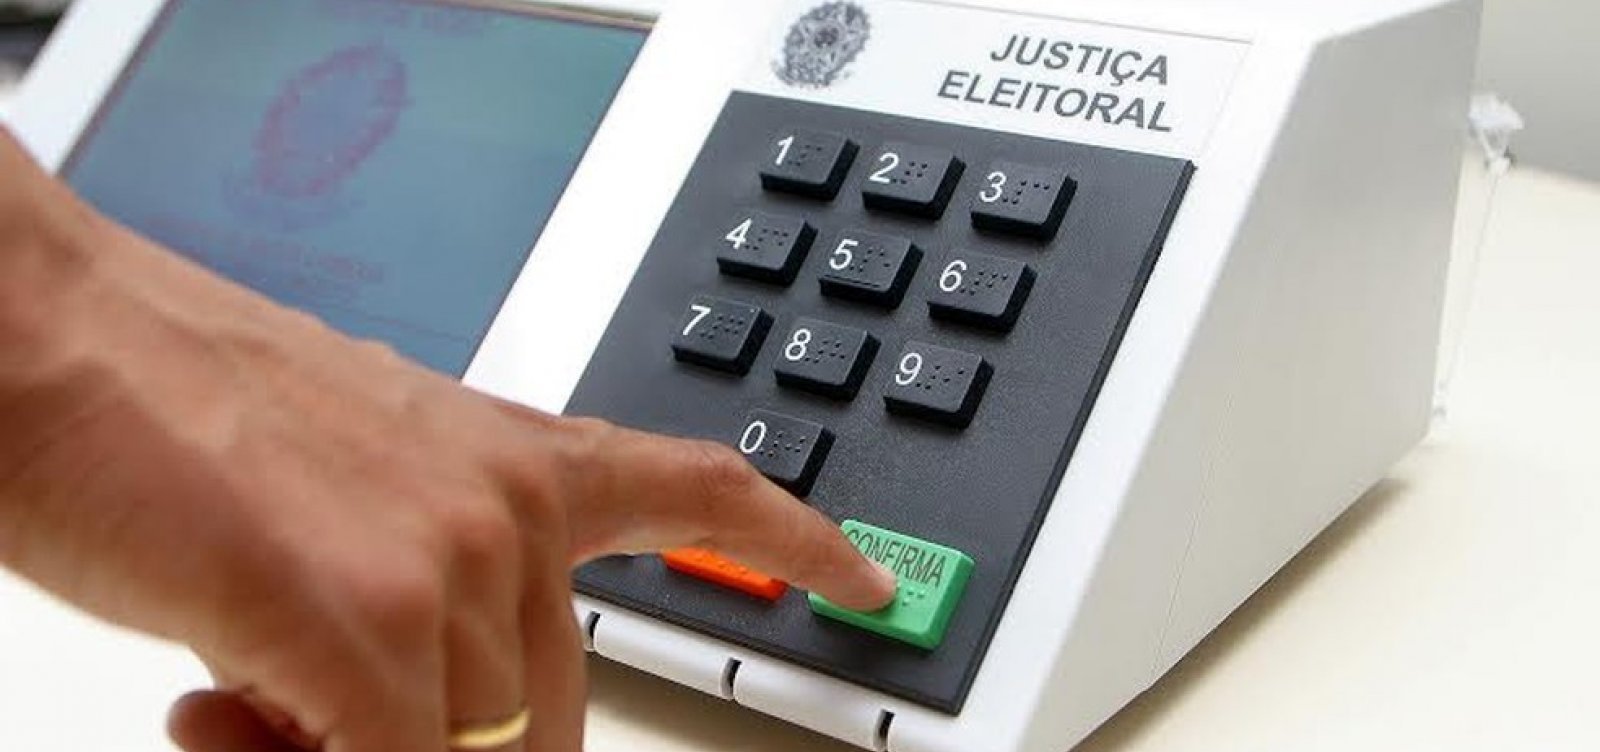 Datafolha: 73% dos brasileiros confiam nas urnas eletrônicas